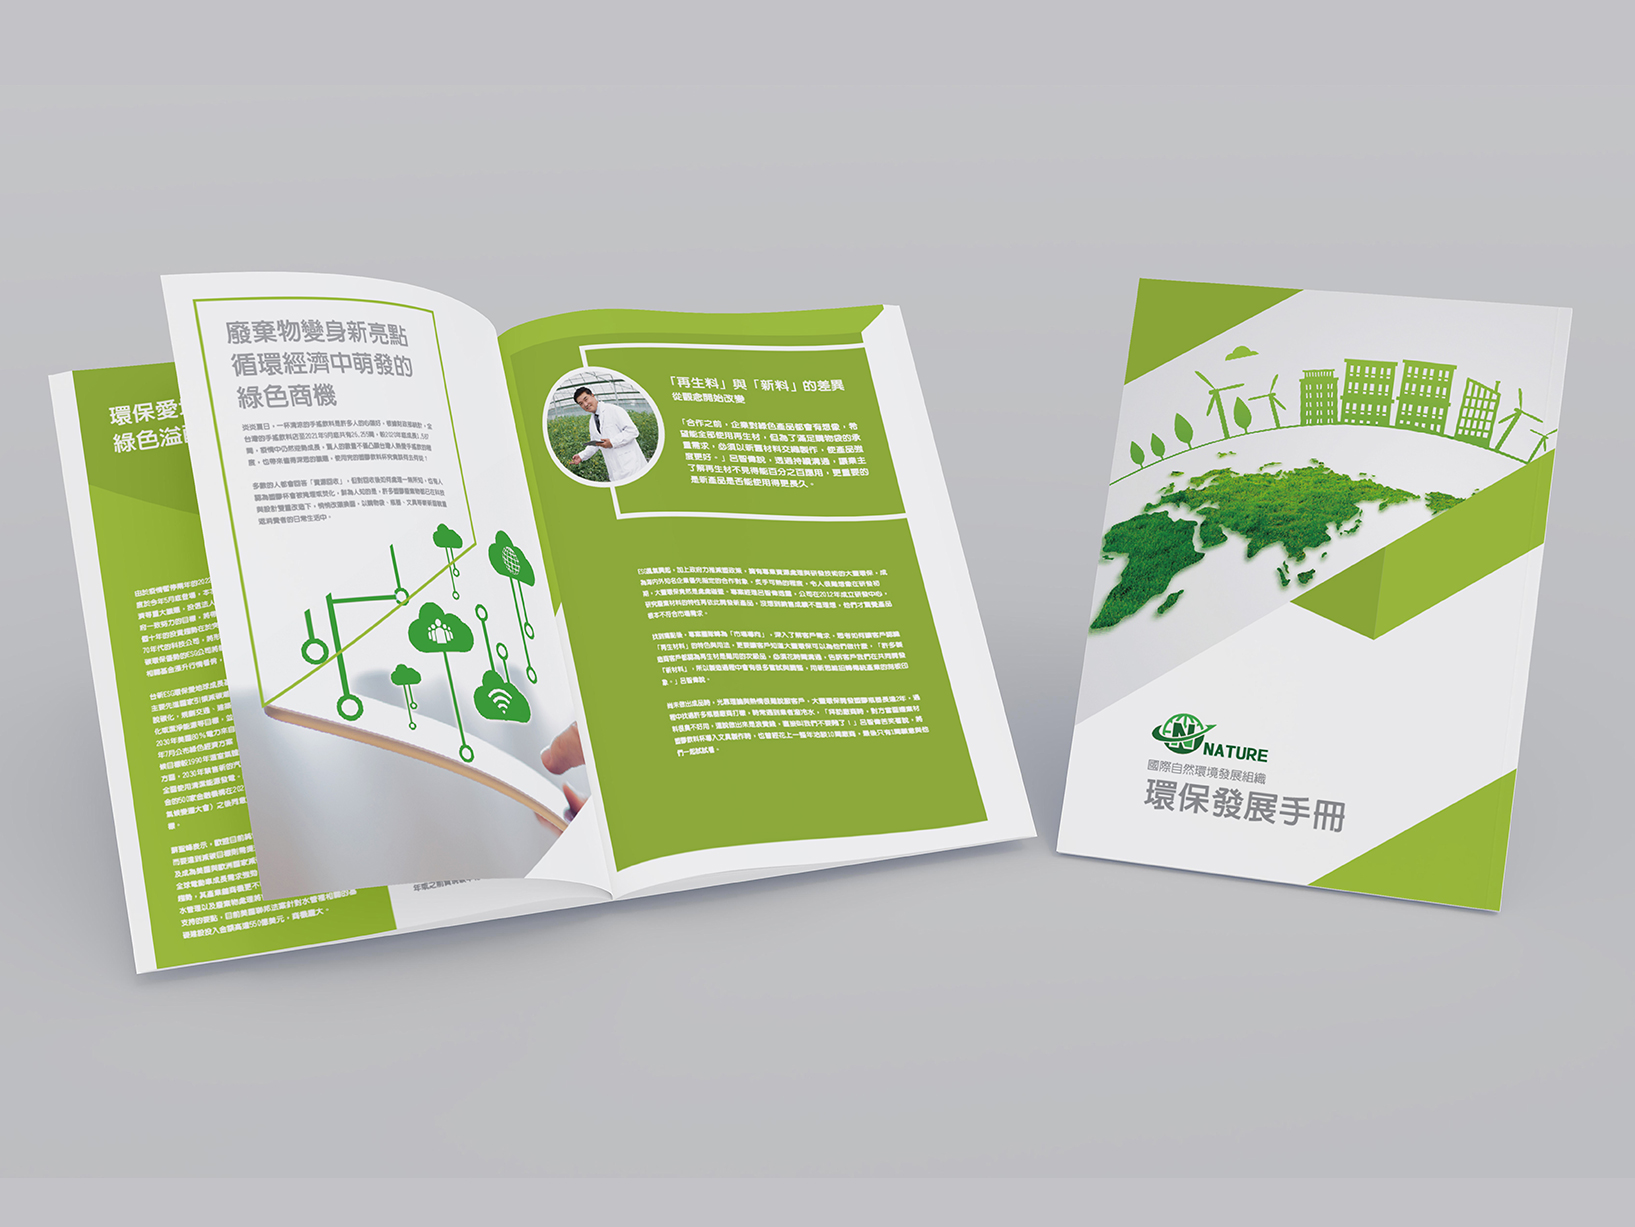 Nature環保組織發展手冊設計